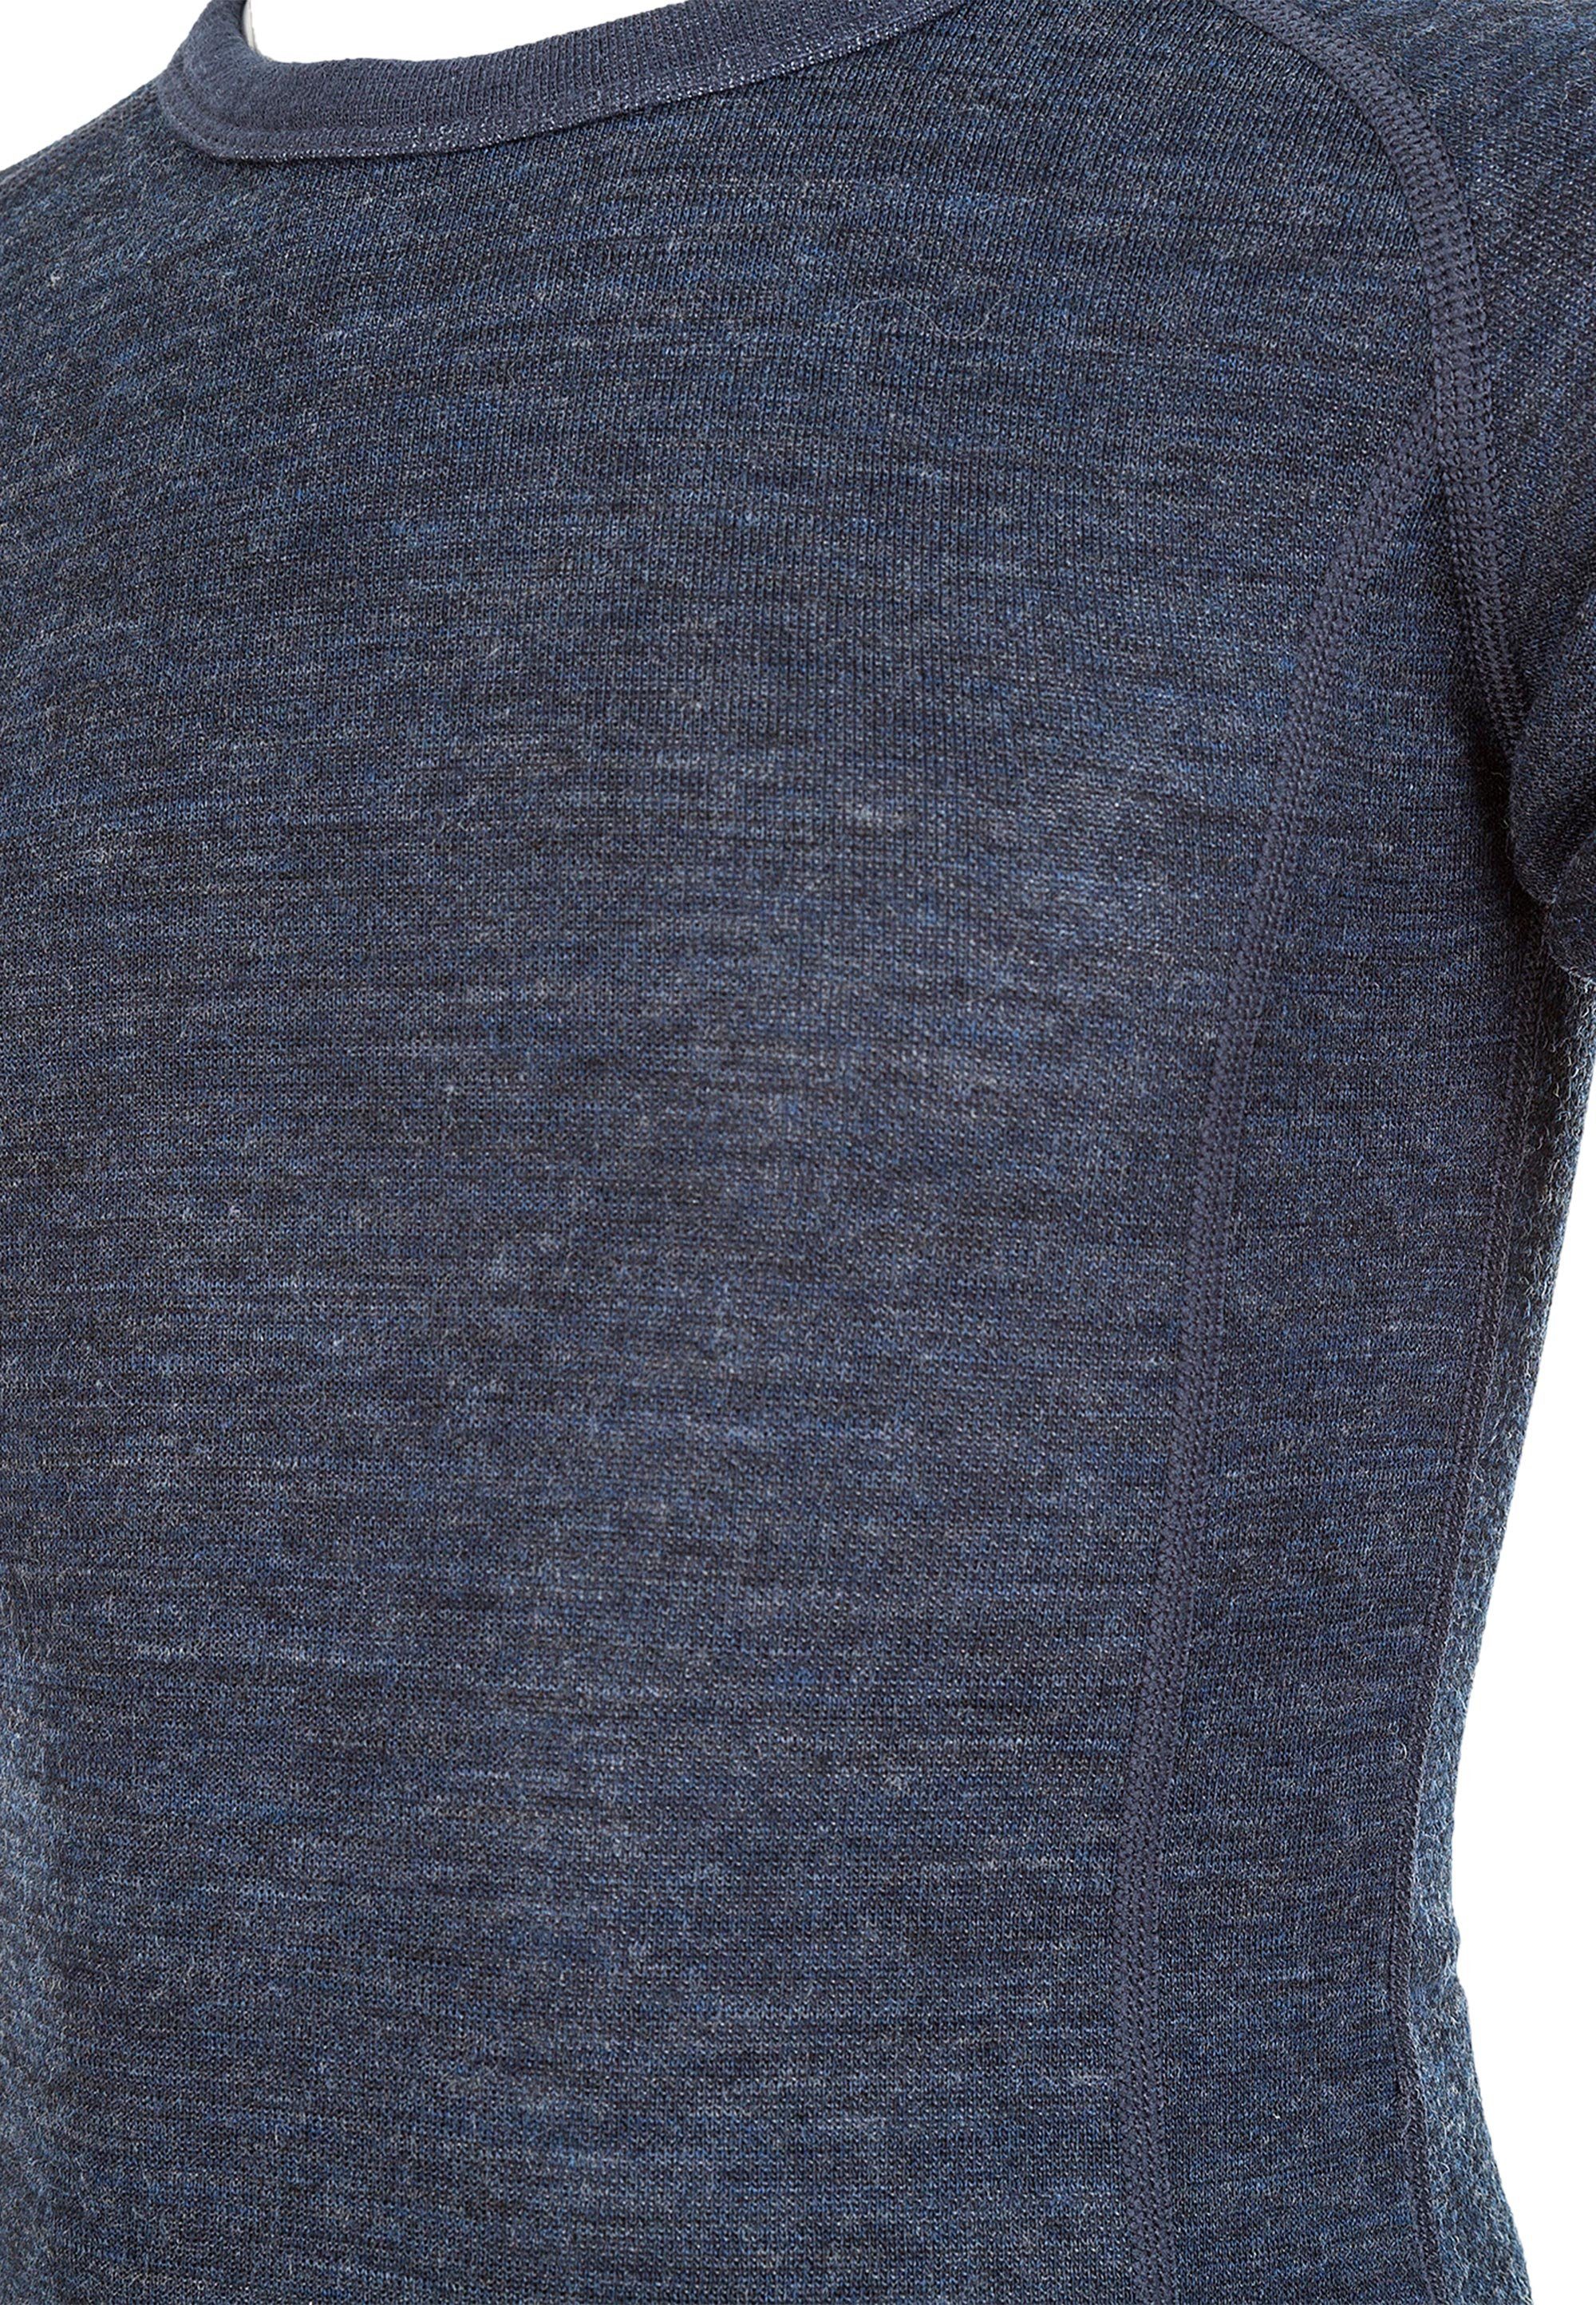 ZIGZAG Funktionsshirt Pattani Wool Funktionsstretch aus mit hohem Merinowolle, Merinowolle-Anteil, und Polyester Elasthan